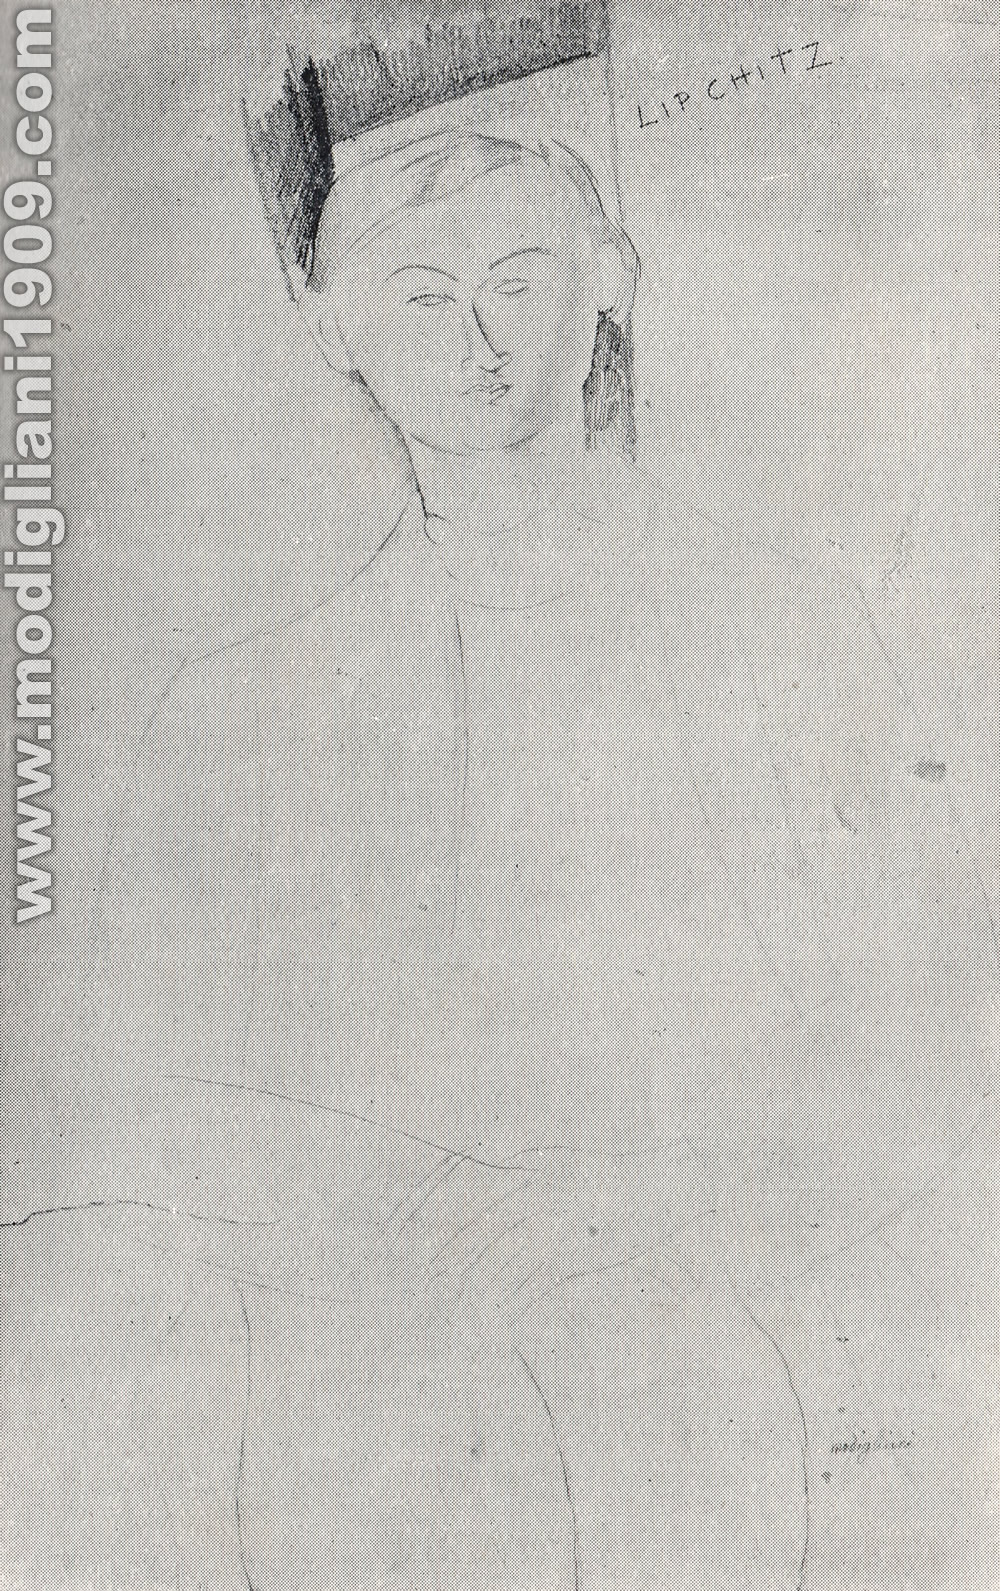 Amedeo Modigliani - Ritratto dello scultore Lipchitz - 1917 - Parigi. Collezione Zborowski